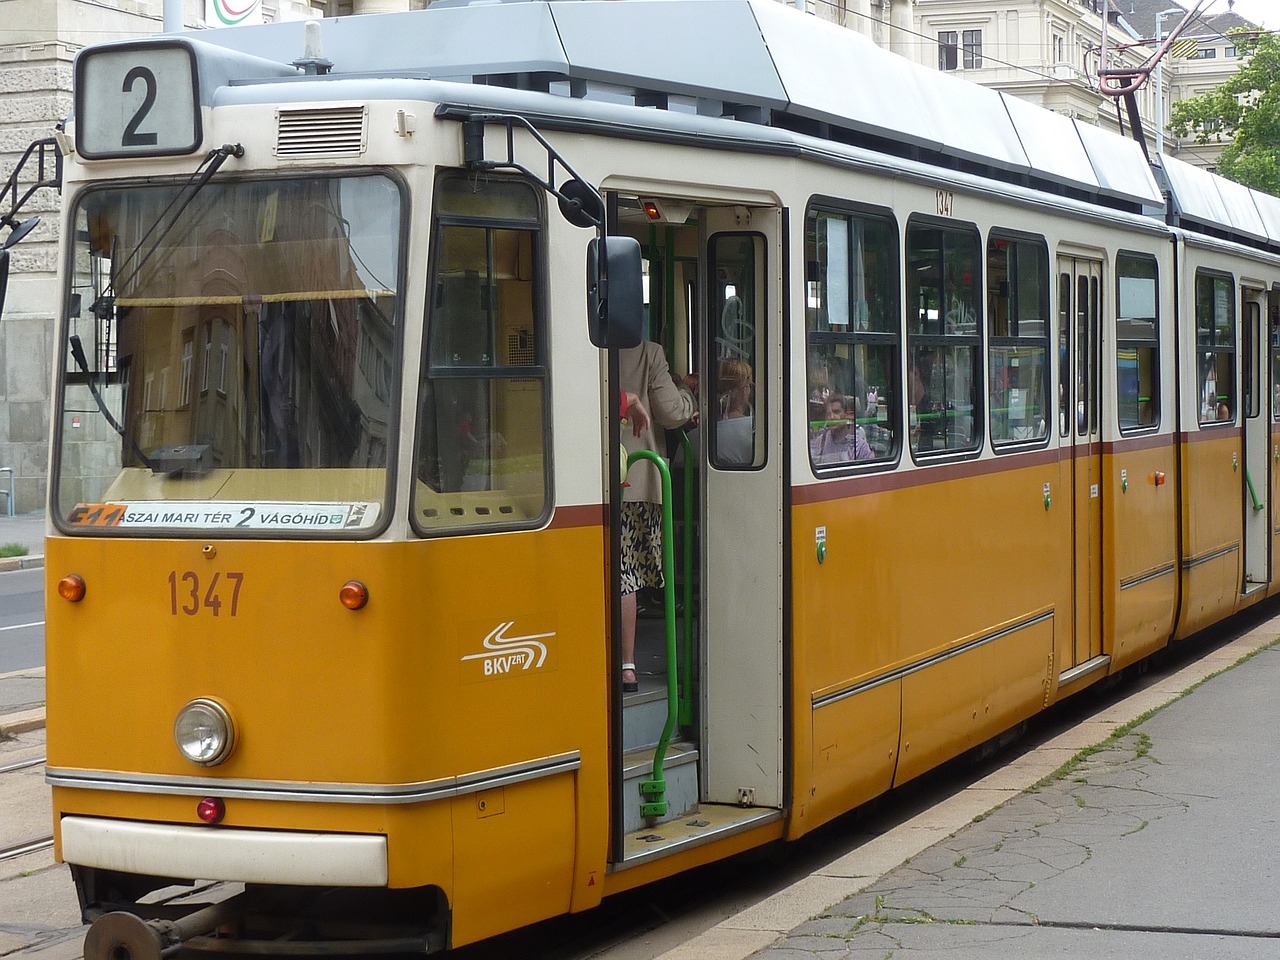 trolley transit europe free photo